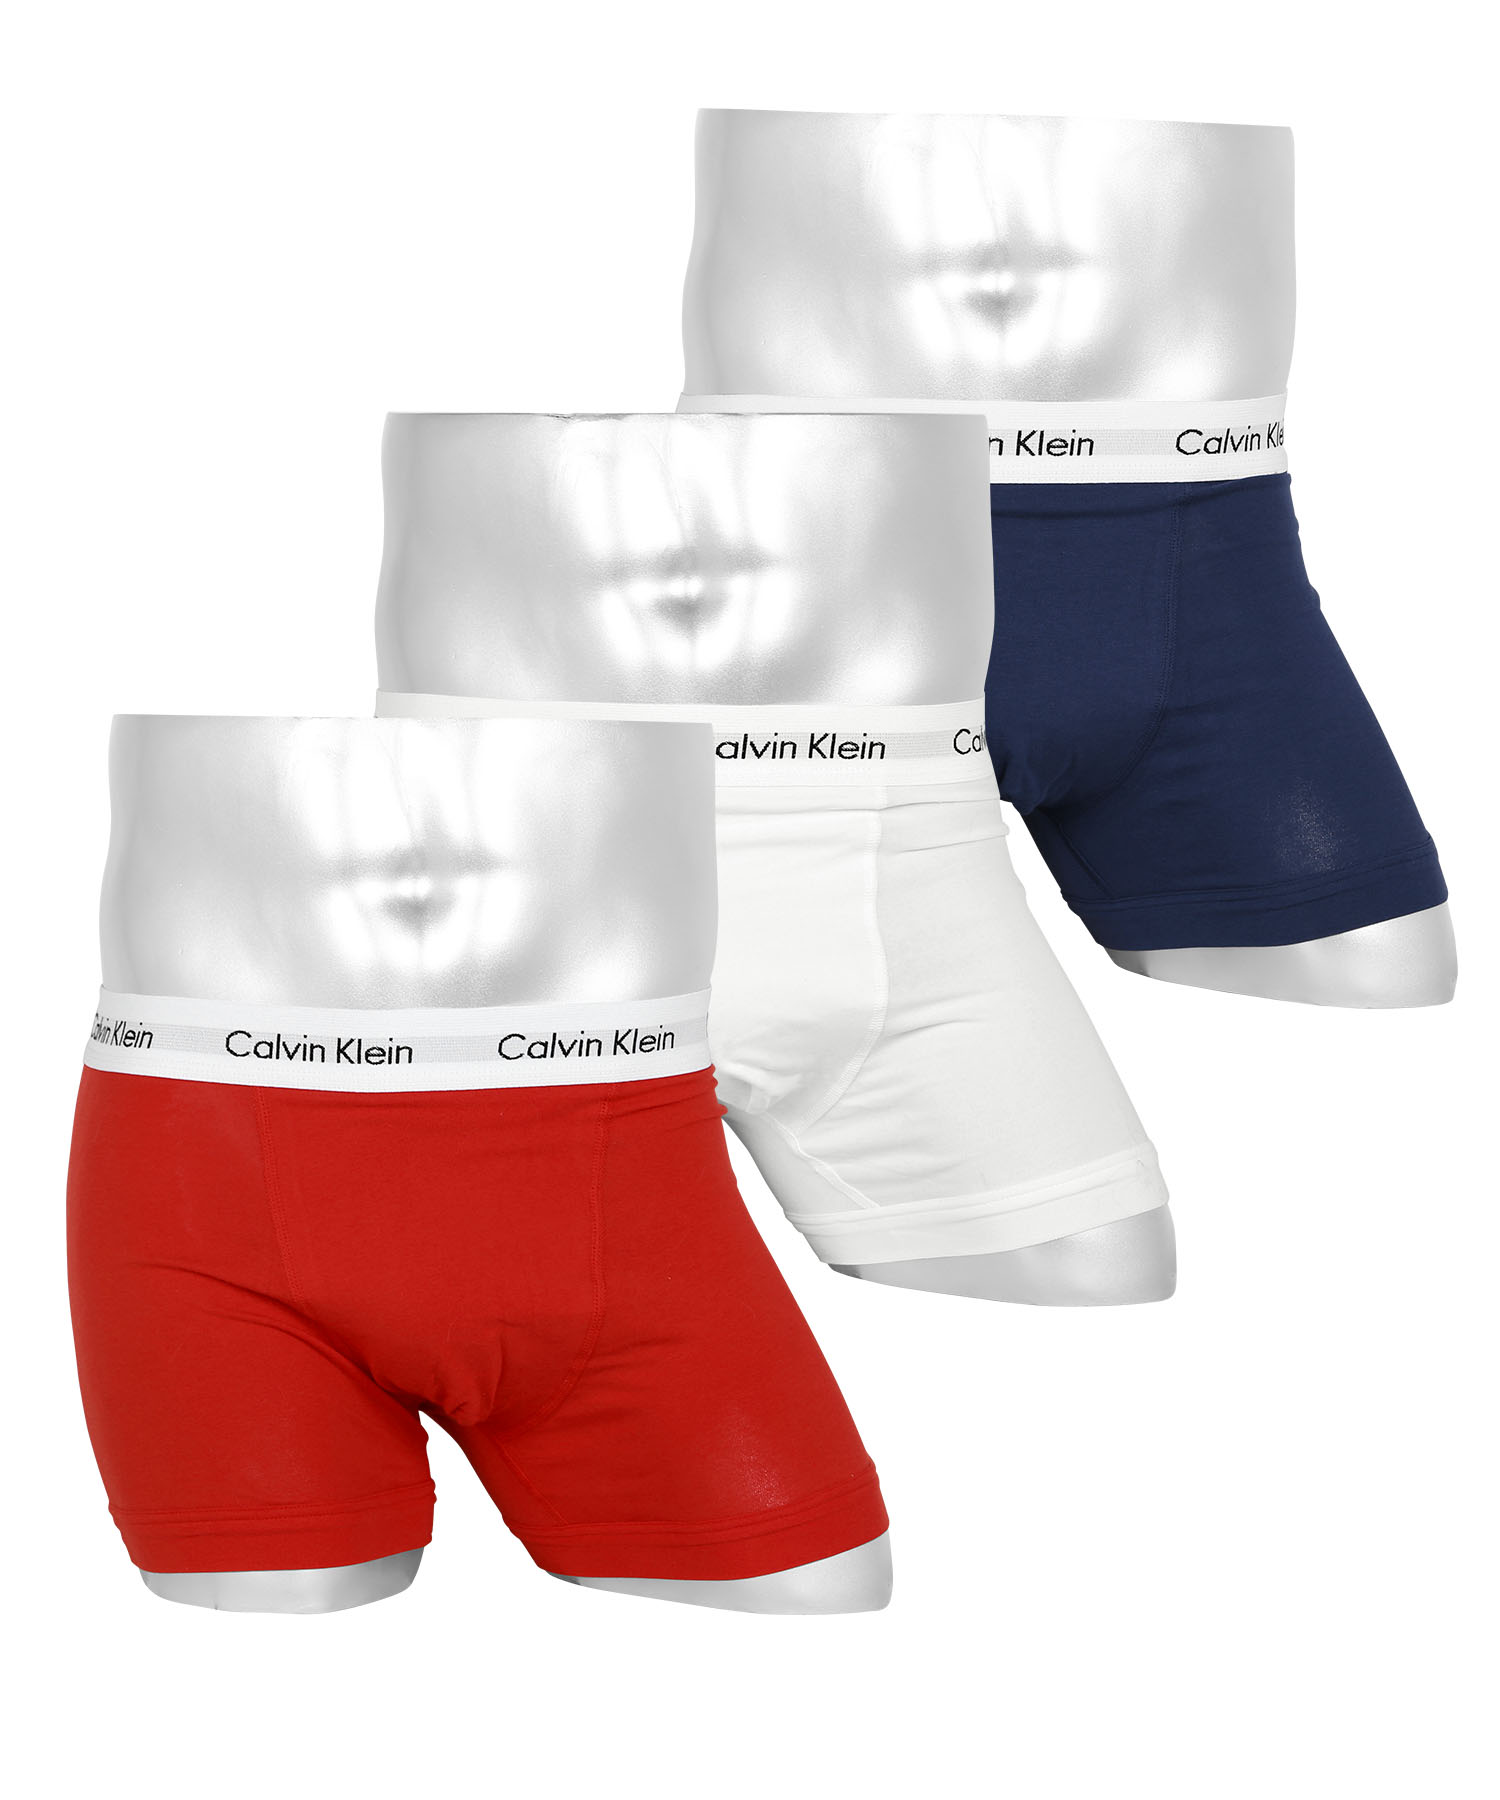 カルバンクライン Calvin Klein ボクサーパンツ 3枚セット メンズ アンダーウェア 男性下着 綿混 コットン 前開き CK ロゴ 高級  ハイブランド